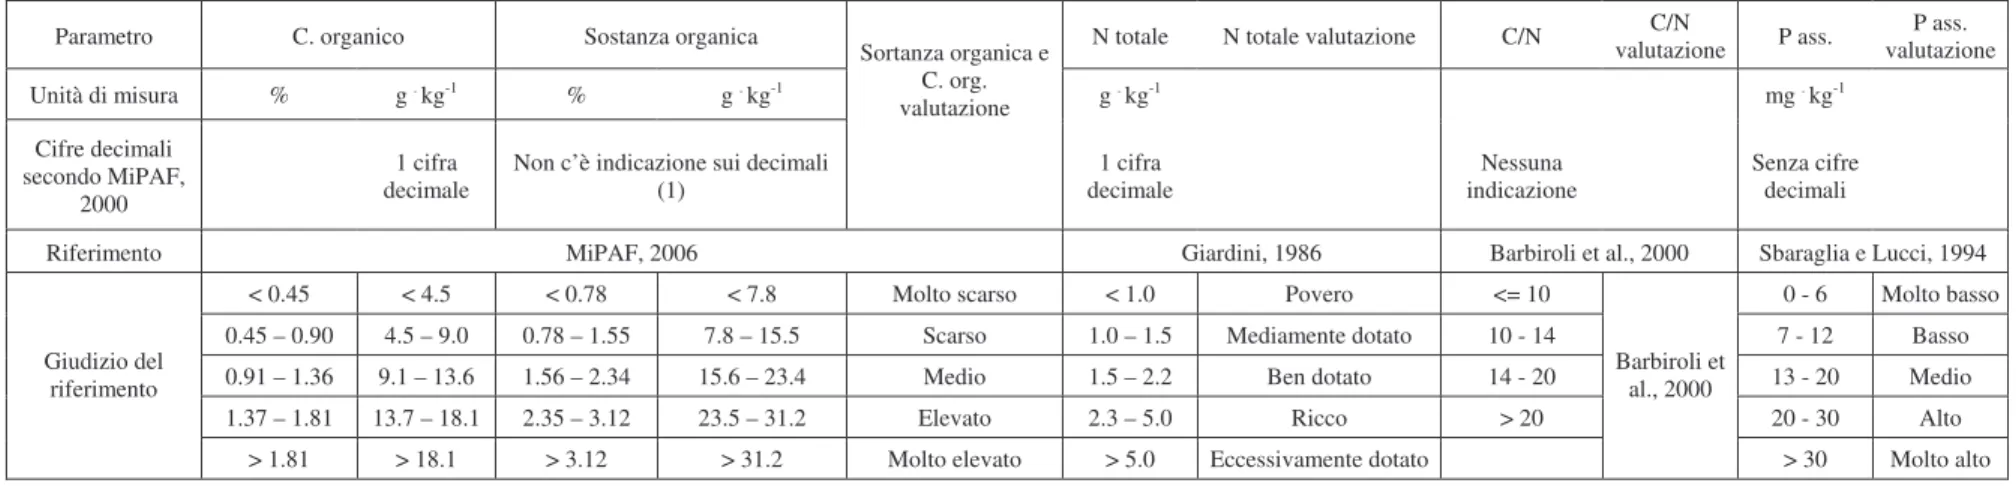 Tabella 3.3. Modalità di espressione dei risultati dei parametri chimico – fisici sui suoli e riferimenti bibliografici utilizzati per la loro valutazione qualitativa